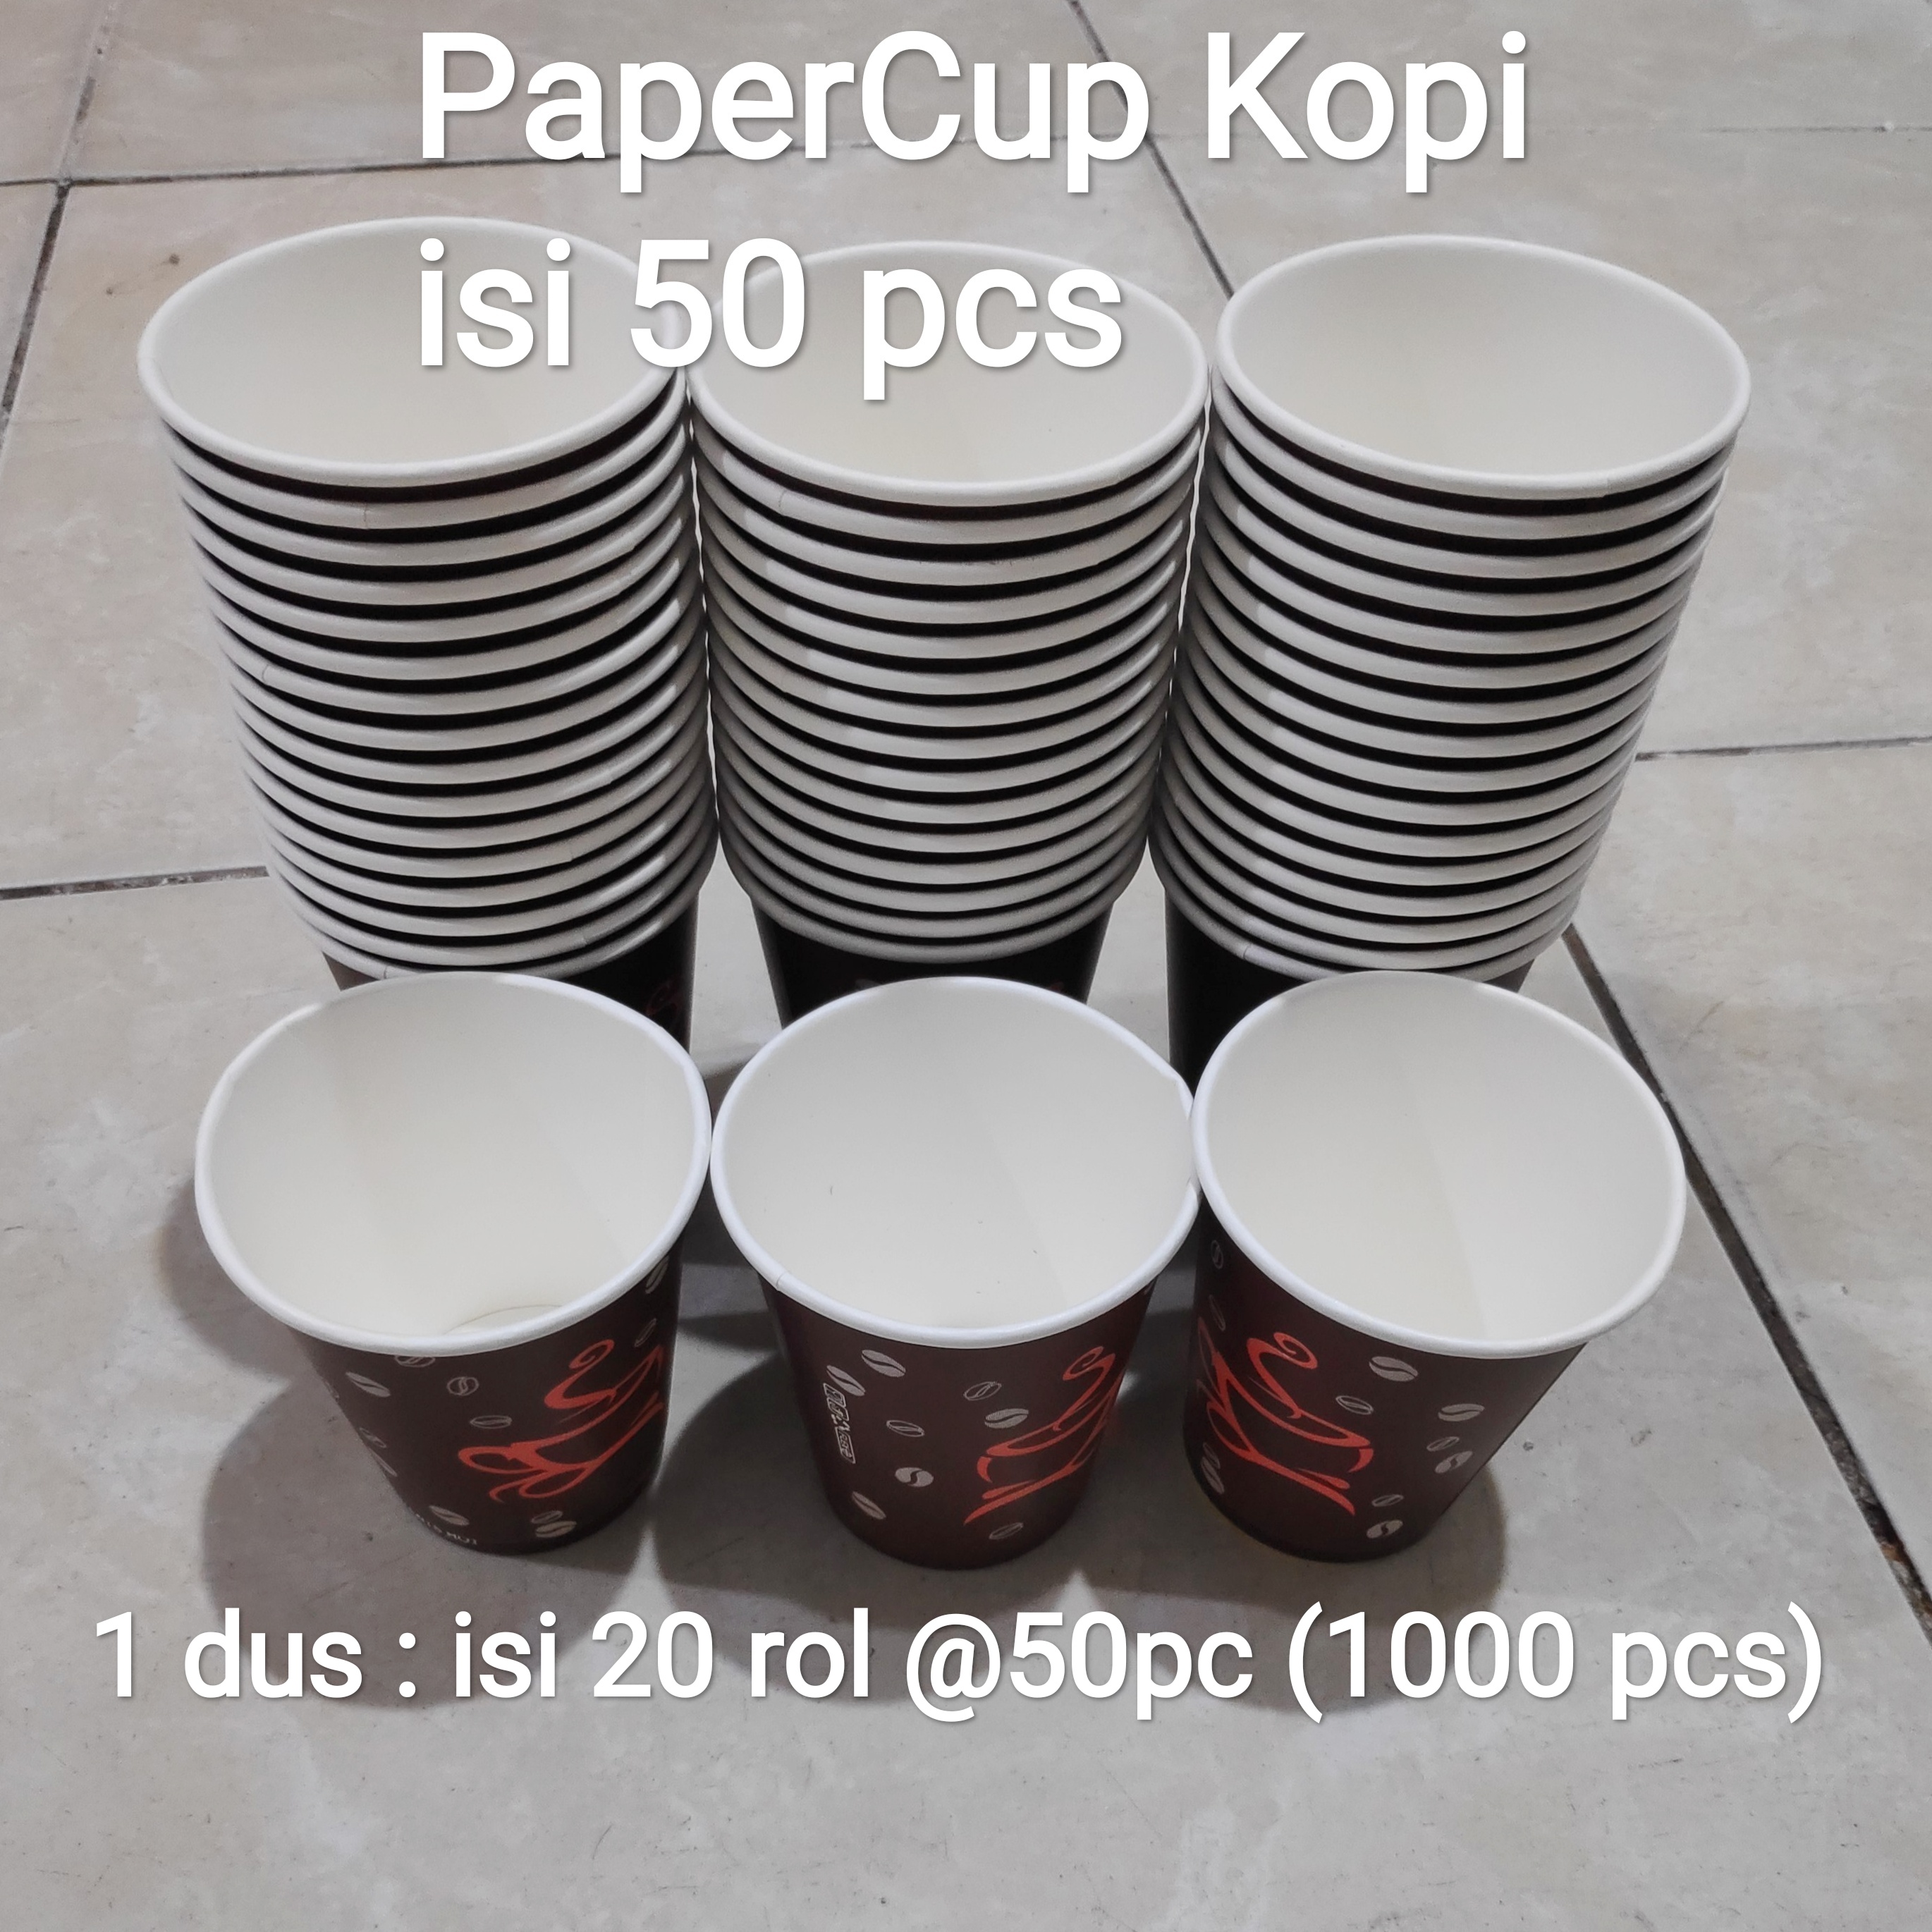 Harga Gelas Untuk Kopi Dari Kertas Jual Paper Cup 8oz Isi 50pc Gelas Foam Kopi Gelas Kertas 2413